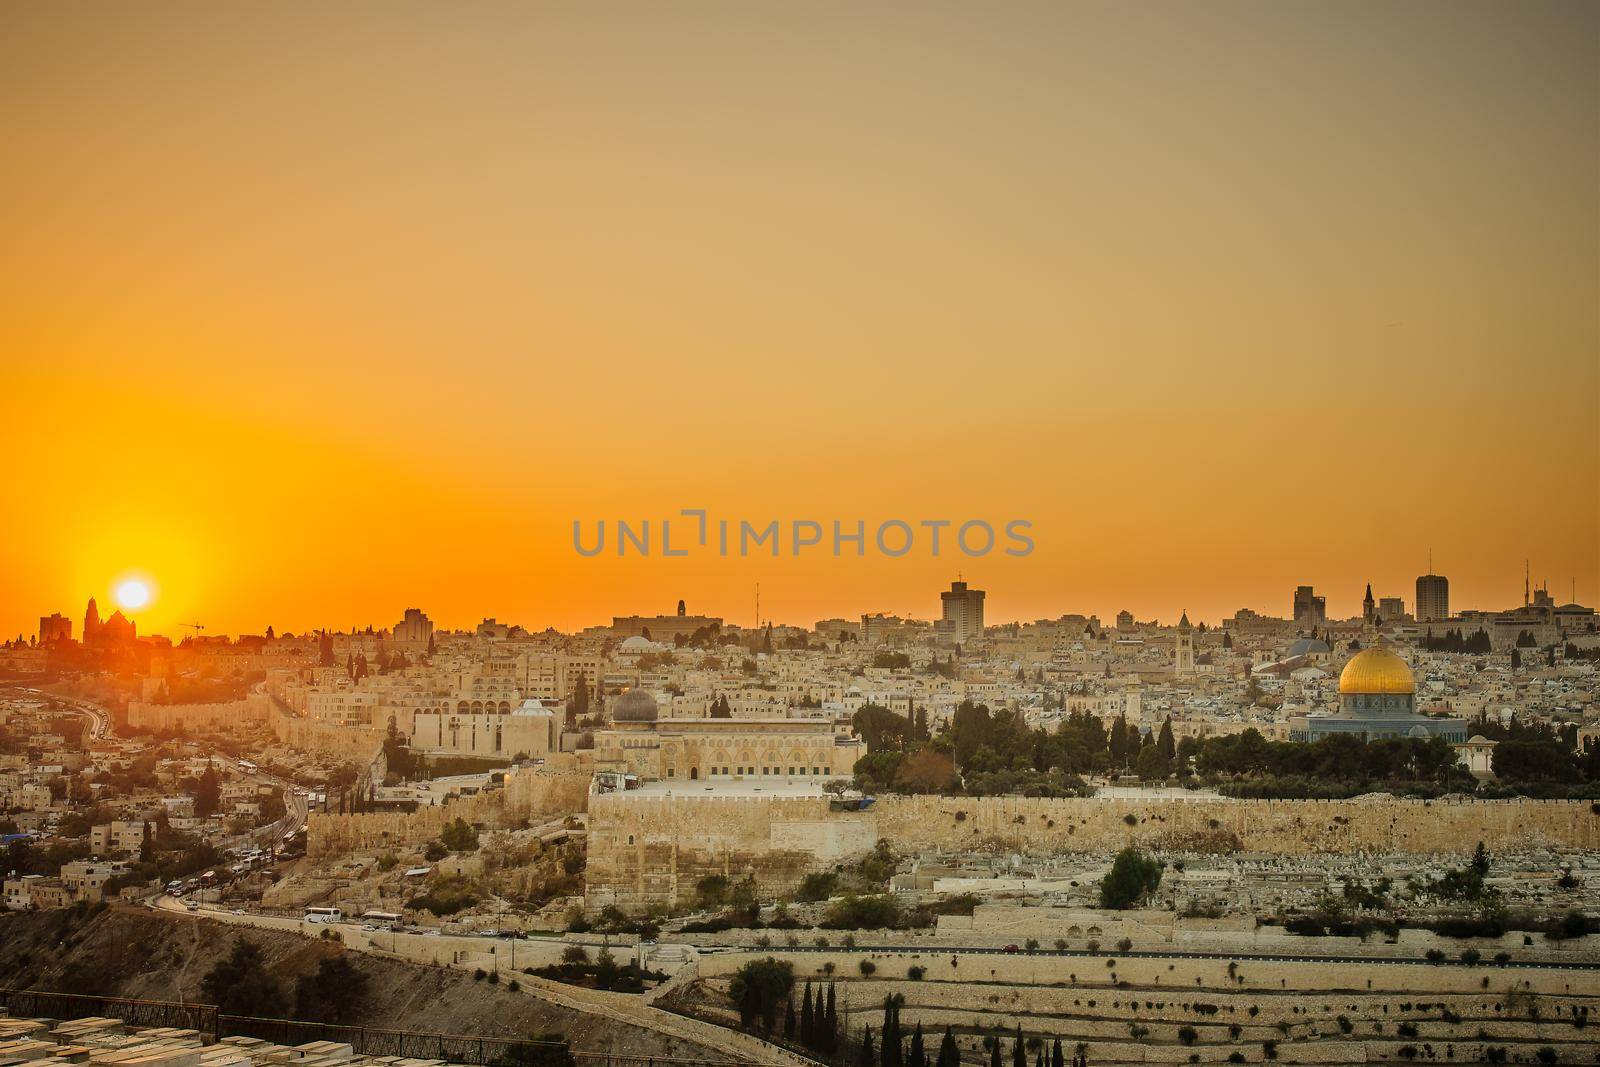 Jerusalem old city at sunset by RnDmS